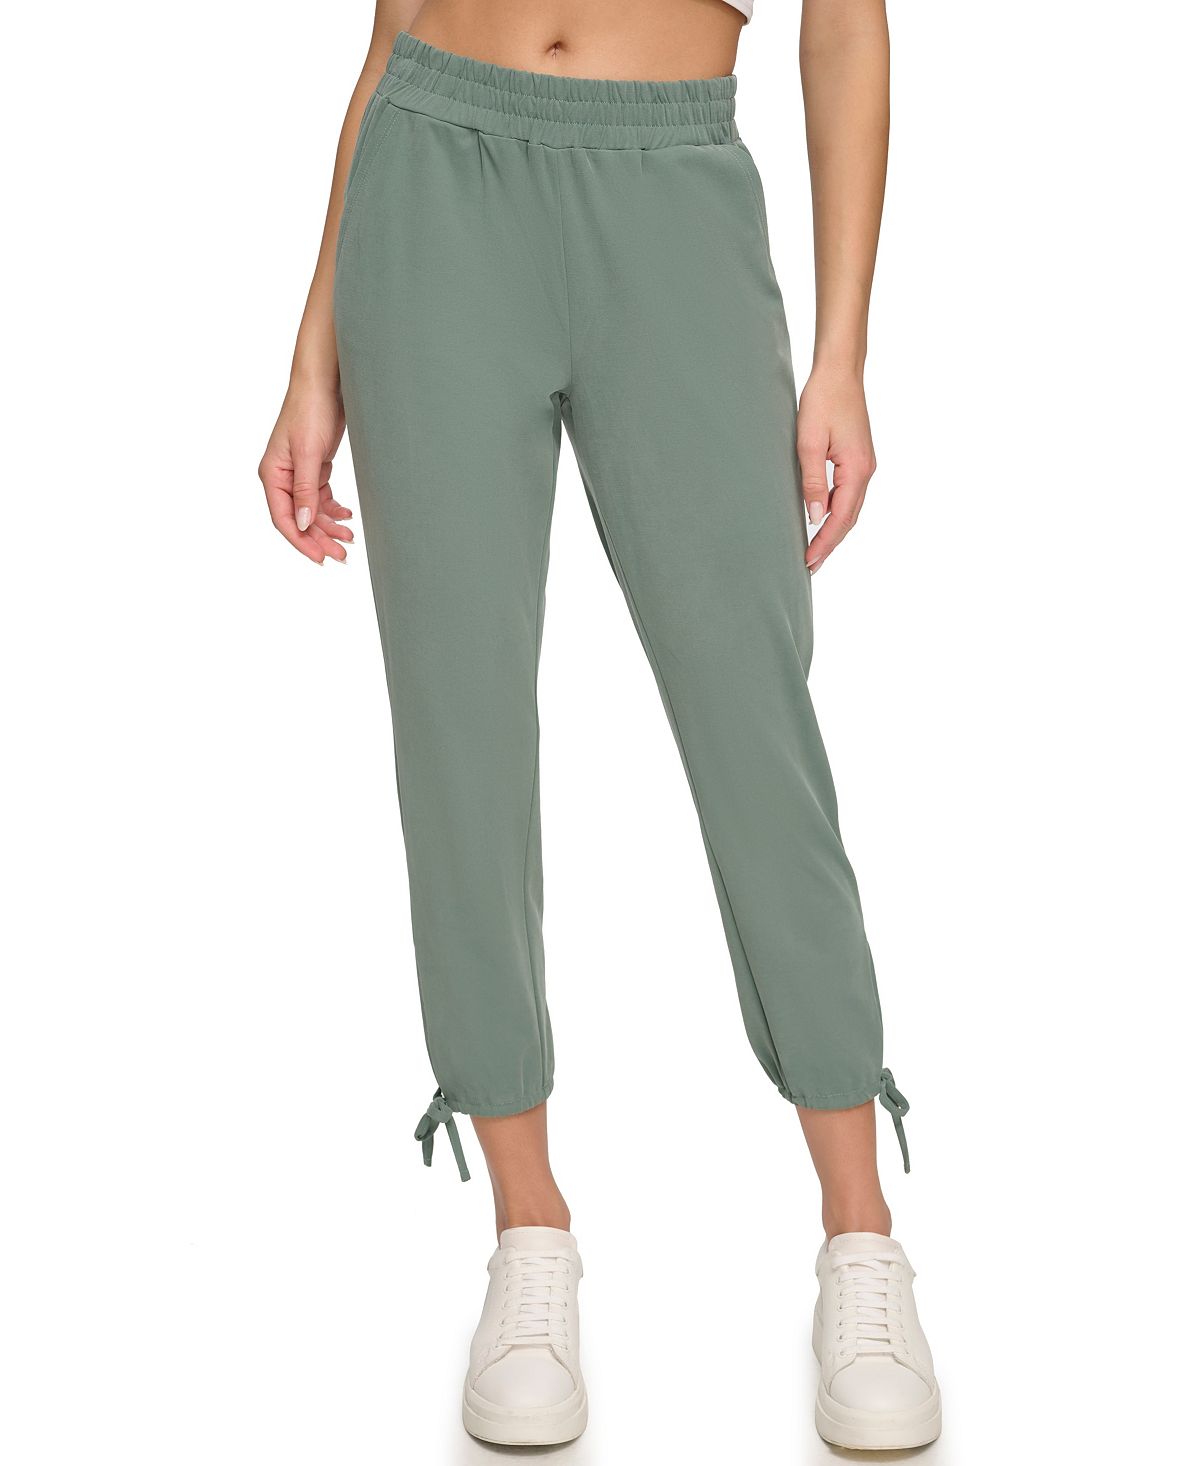 Женские замшевые брюки пике без застежки с завязками по бокам Marc New York britton fern new beginnings